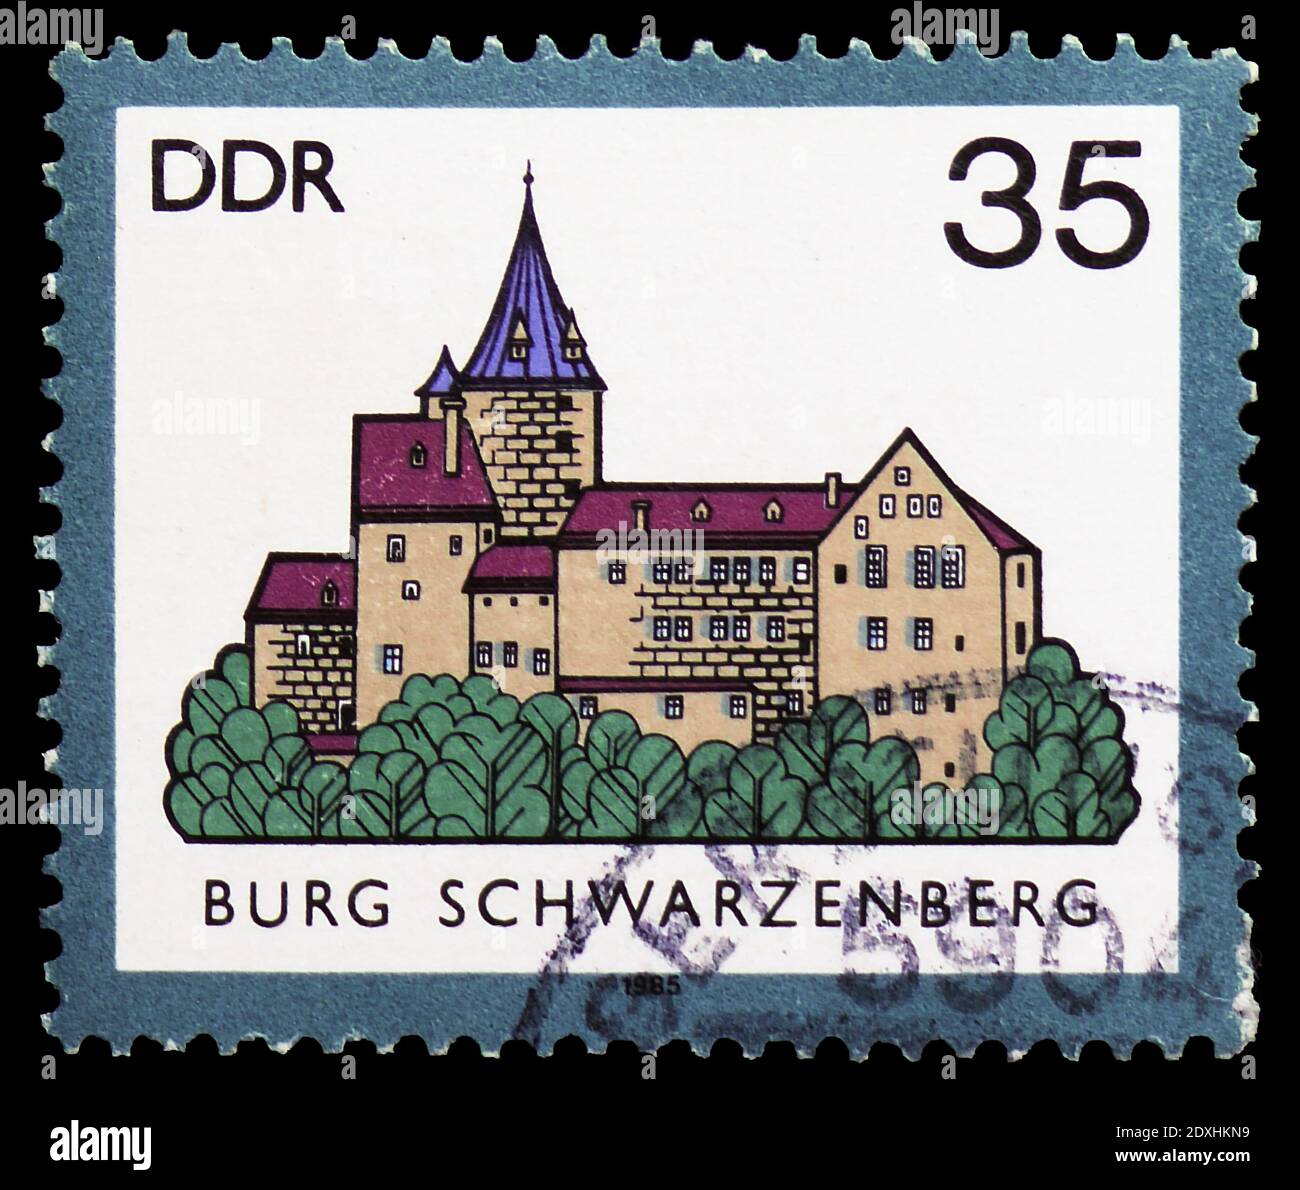 MOSKAU, RUSSLAND - 23. MÄRZ 2019: Briefmarke gedruckt in Deutschland, Demokratische Republik zeigt Schwarzenberg, Schlösser der DDR-Serie, um 1985 Stockfoto